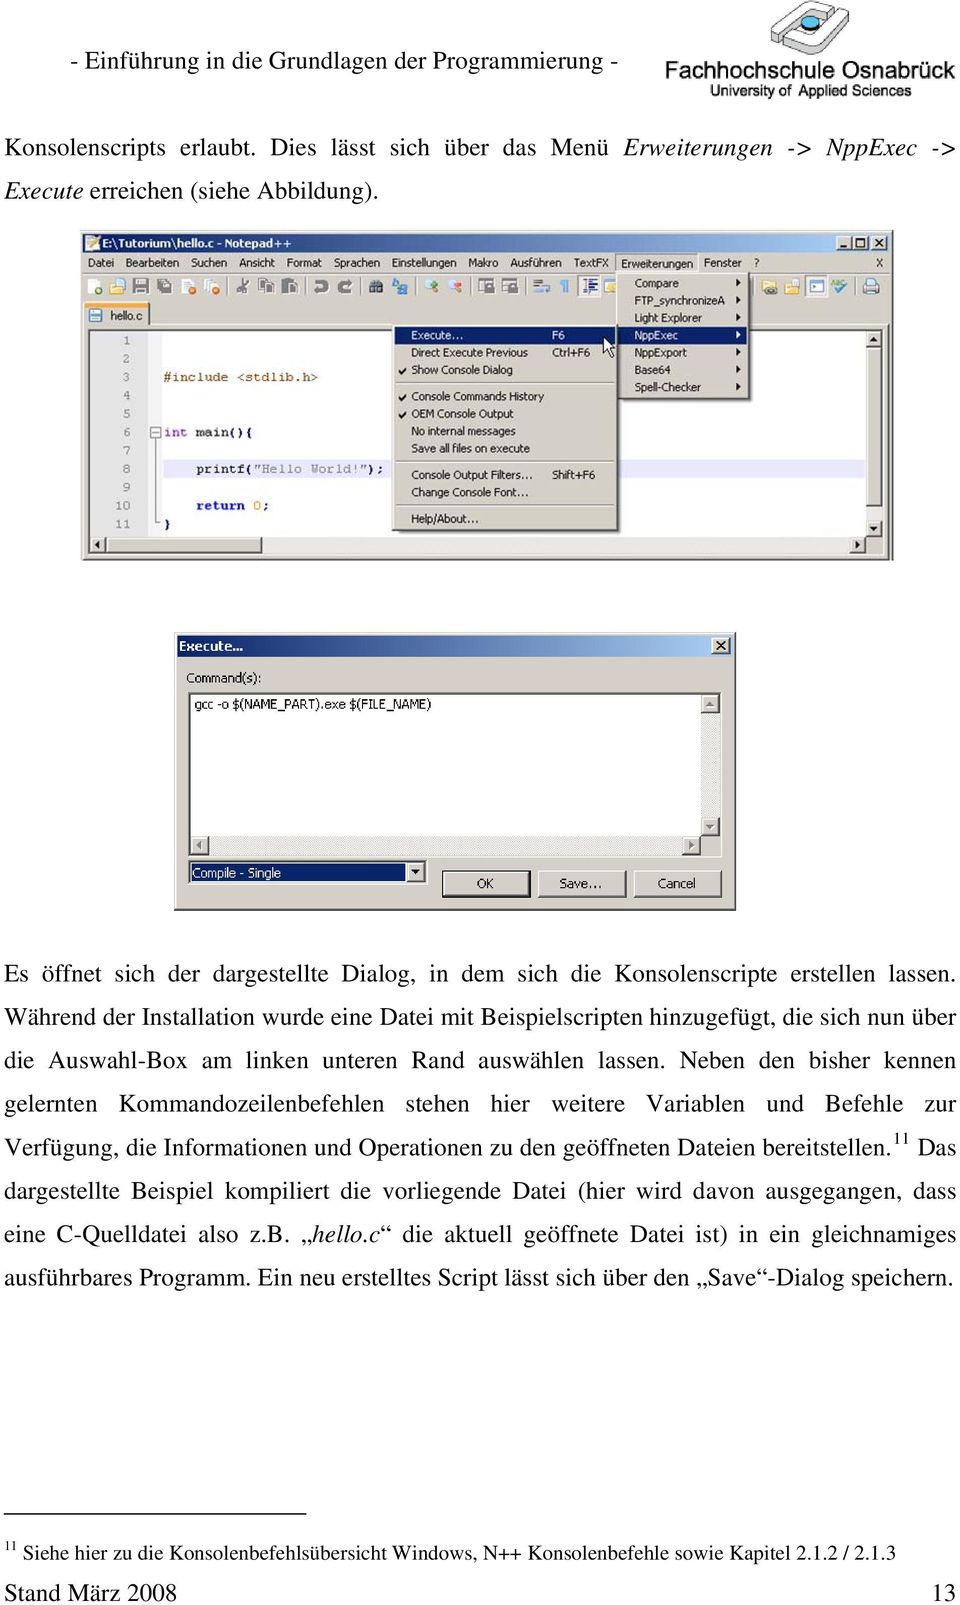 Während der Installation wurde eine Datei mit Beispielscripten hinzugefügt, die sich nun über die Auswahl-Box am linken unteren Rand auswählen lassen.